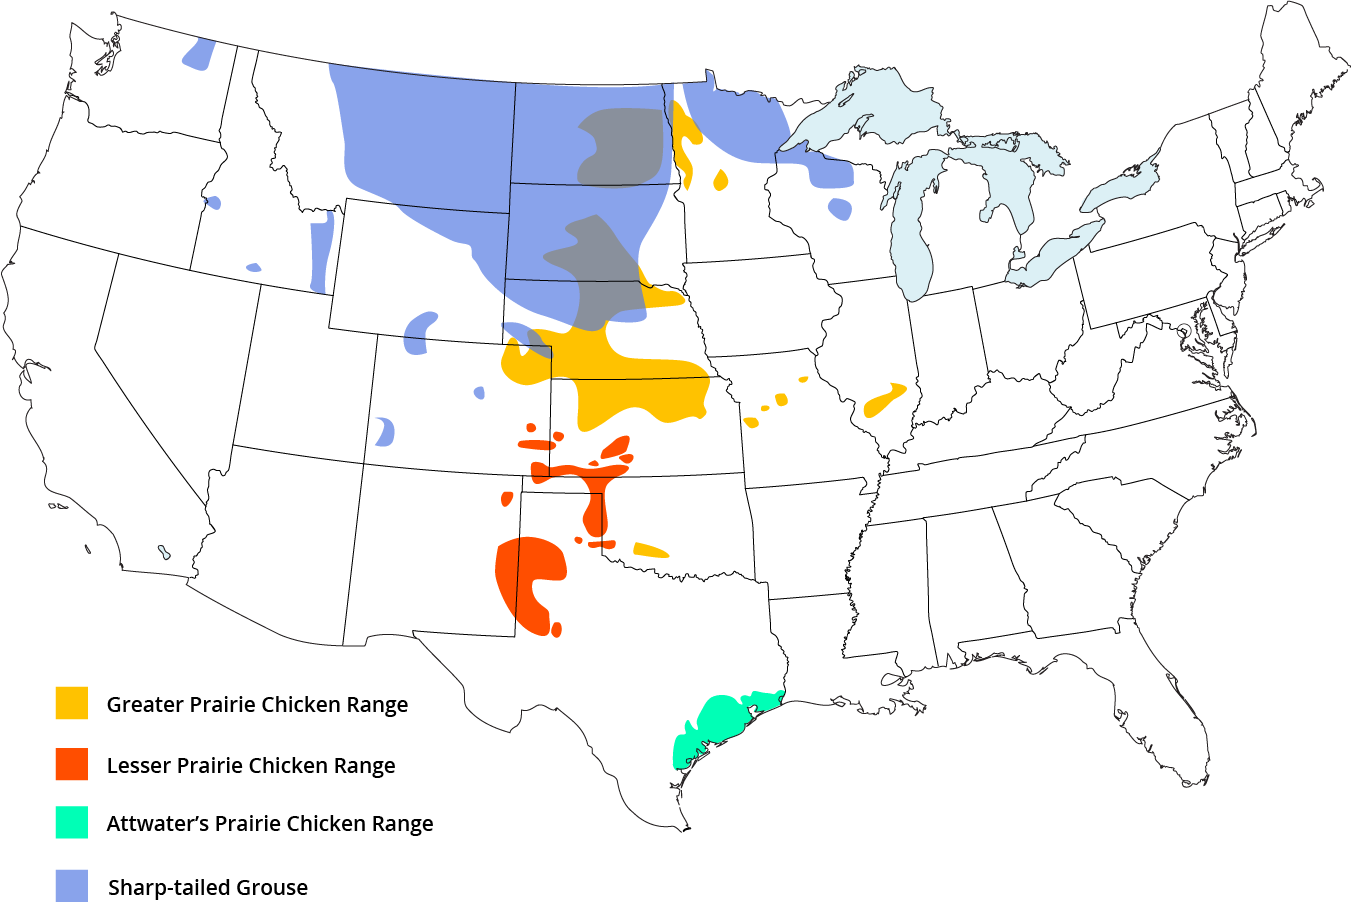 Prairie Chicken Range in Nebraska, located mostly in central Nebraska